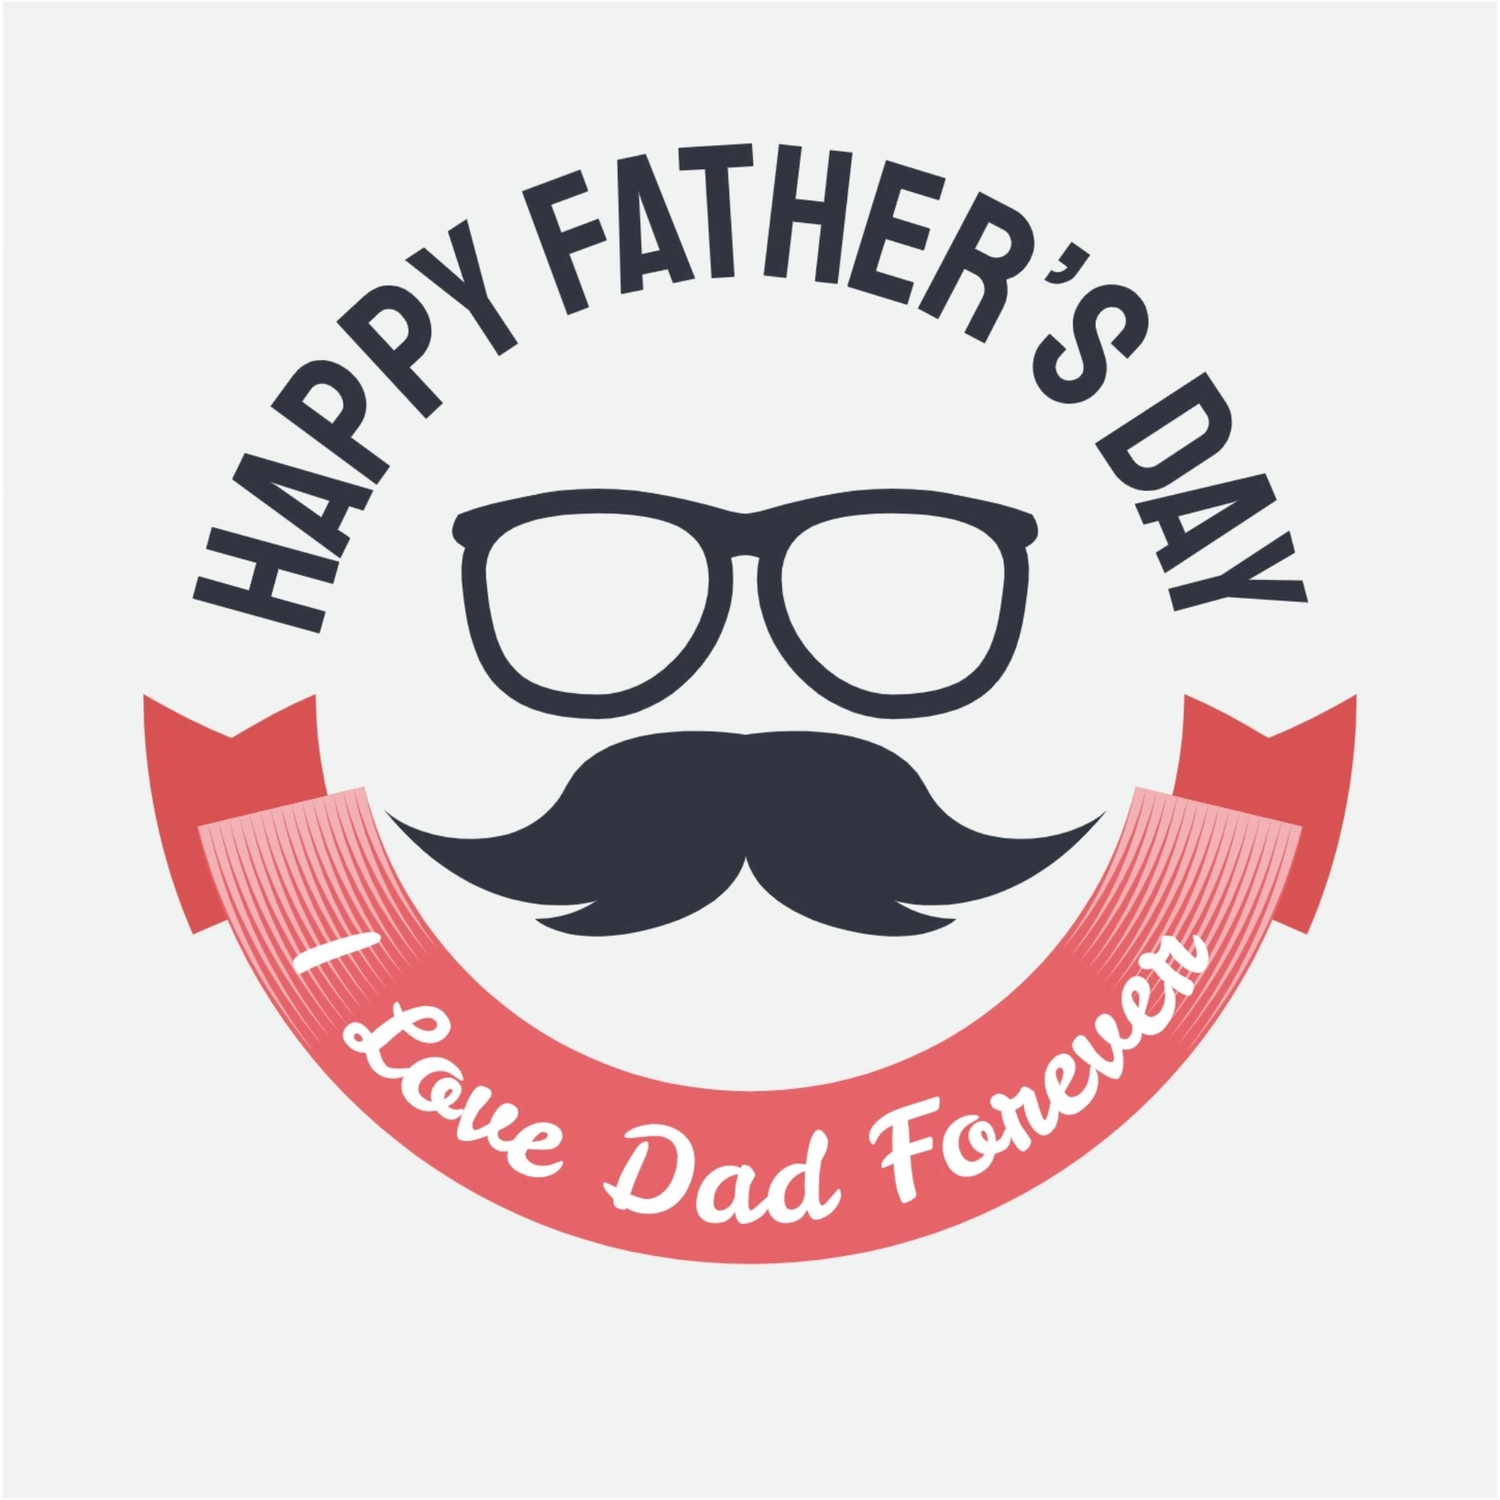 メガネと口髭の父の日ロゴ, ロゴ, ロゴマーク, ロゴタイプ, ロゴテンプレート